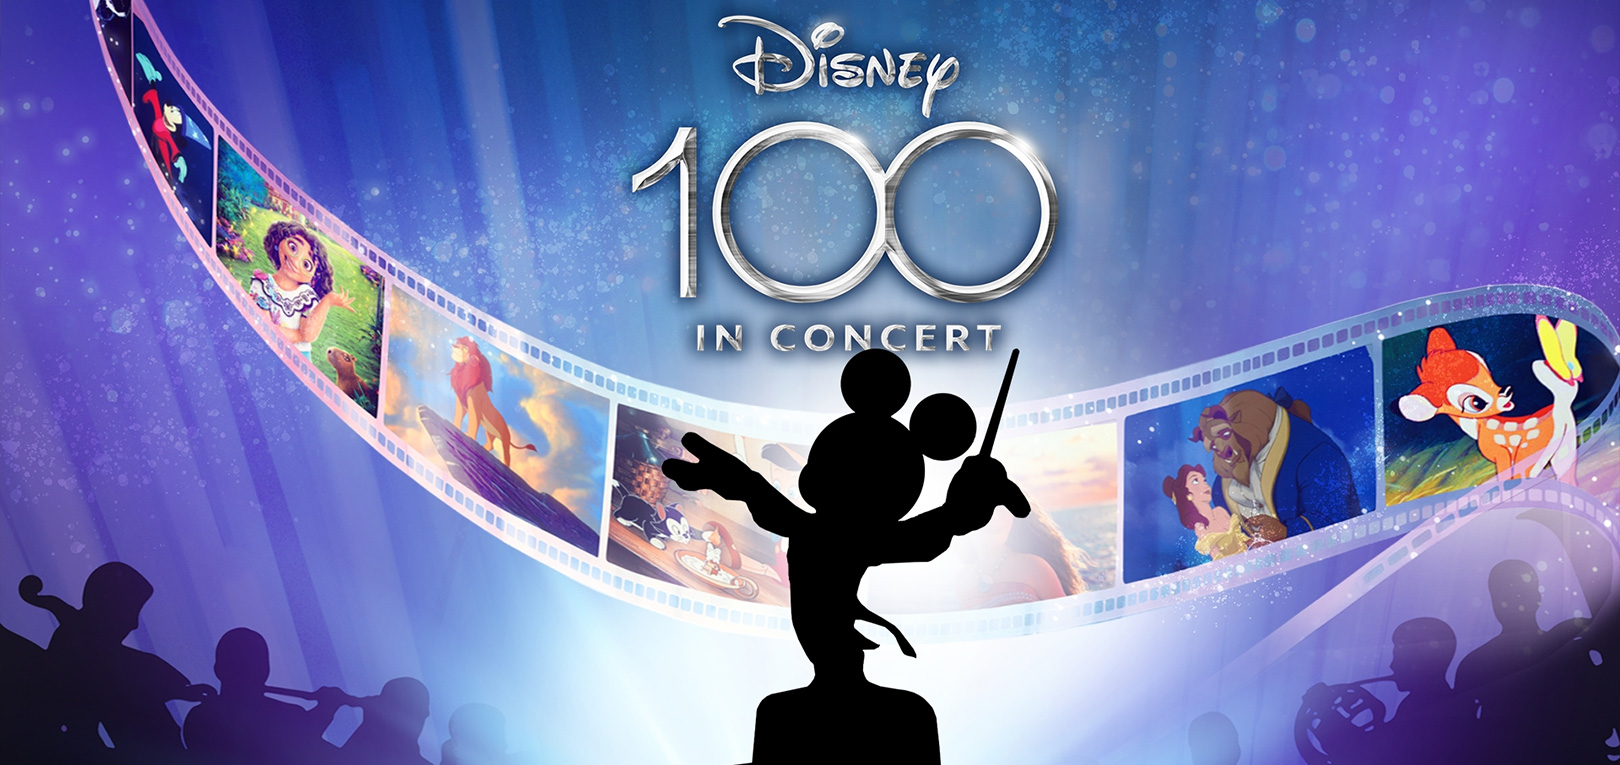 Disney-100-In-Concert-